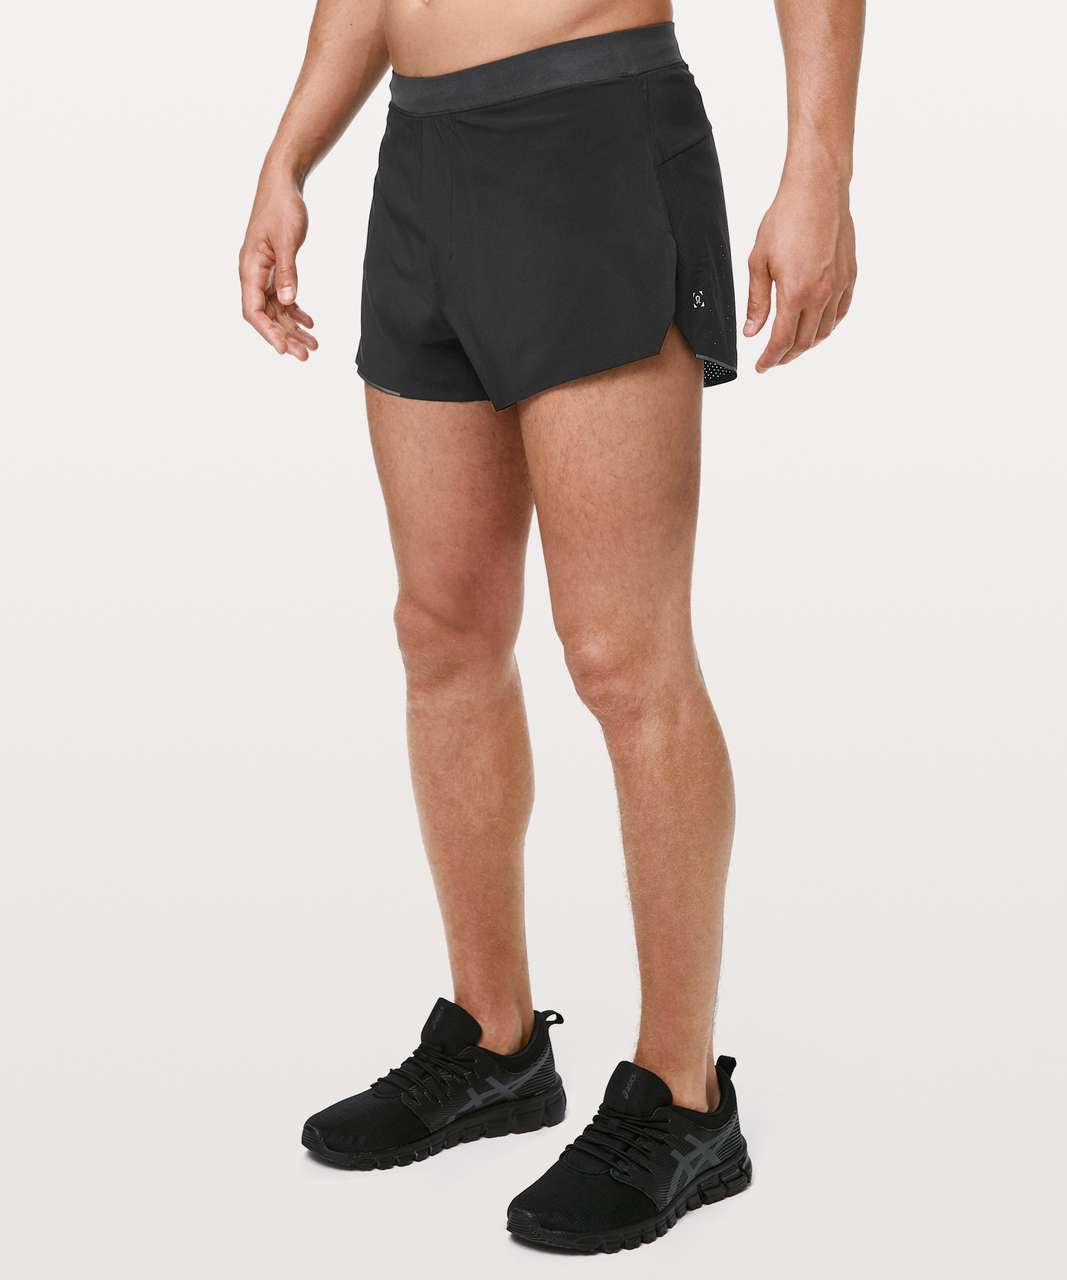 lululemon 3 inch shorts